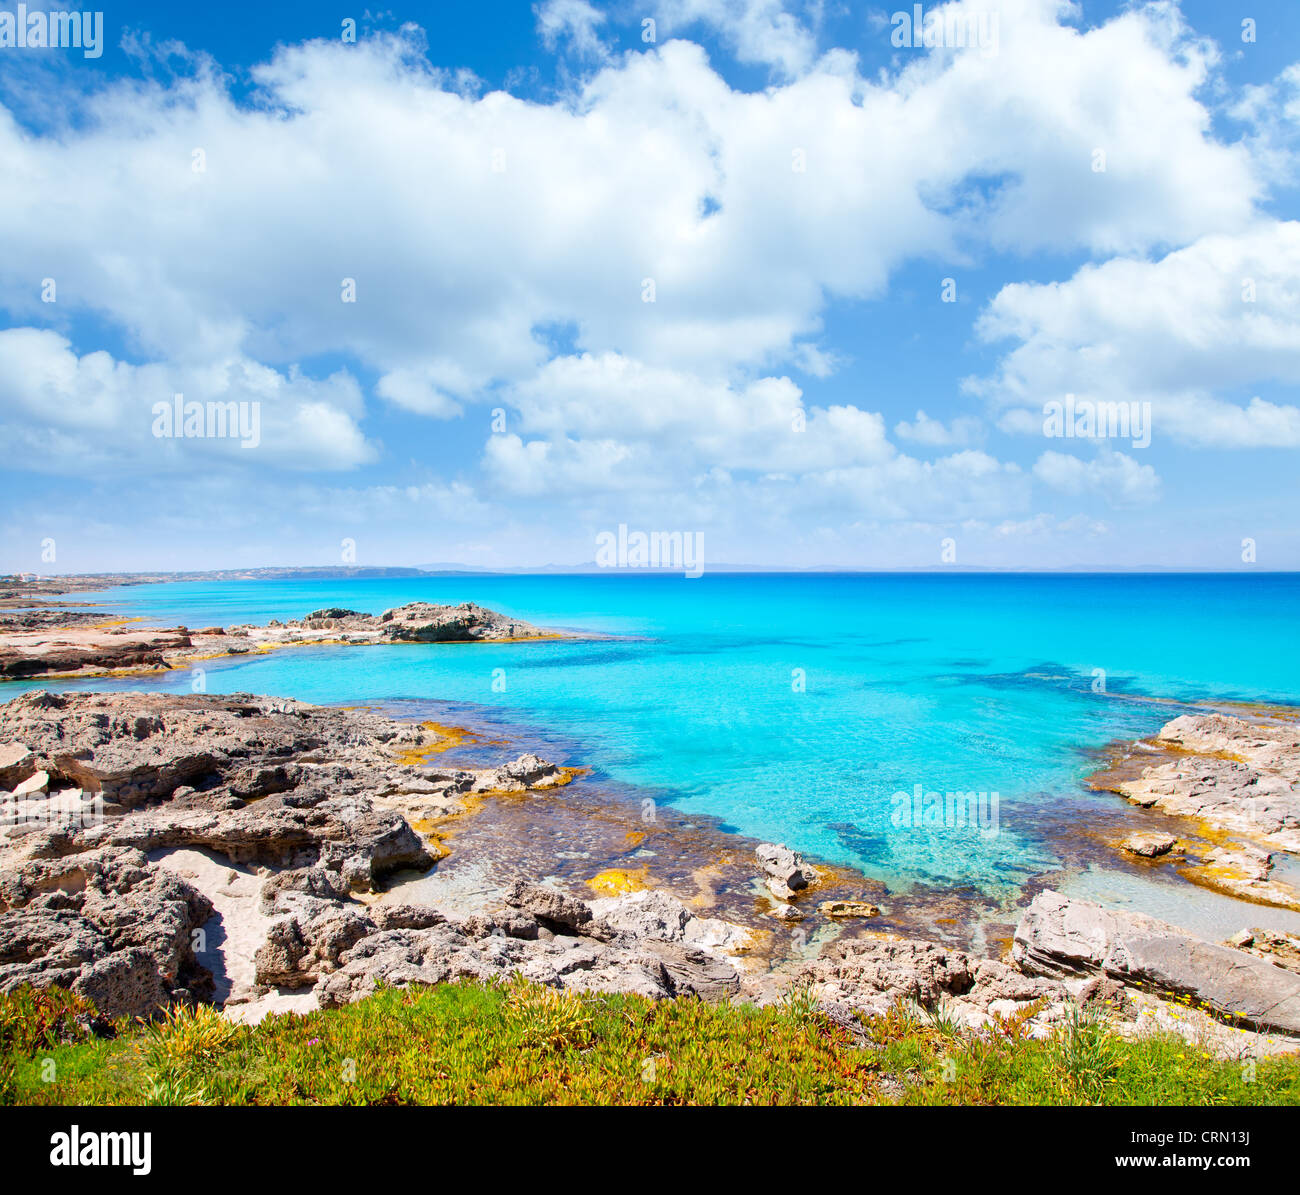 Balearen-Insel Formentera im Escalo felsigen Strand und das türkisblaue Meer Stockfoto